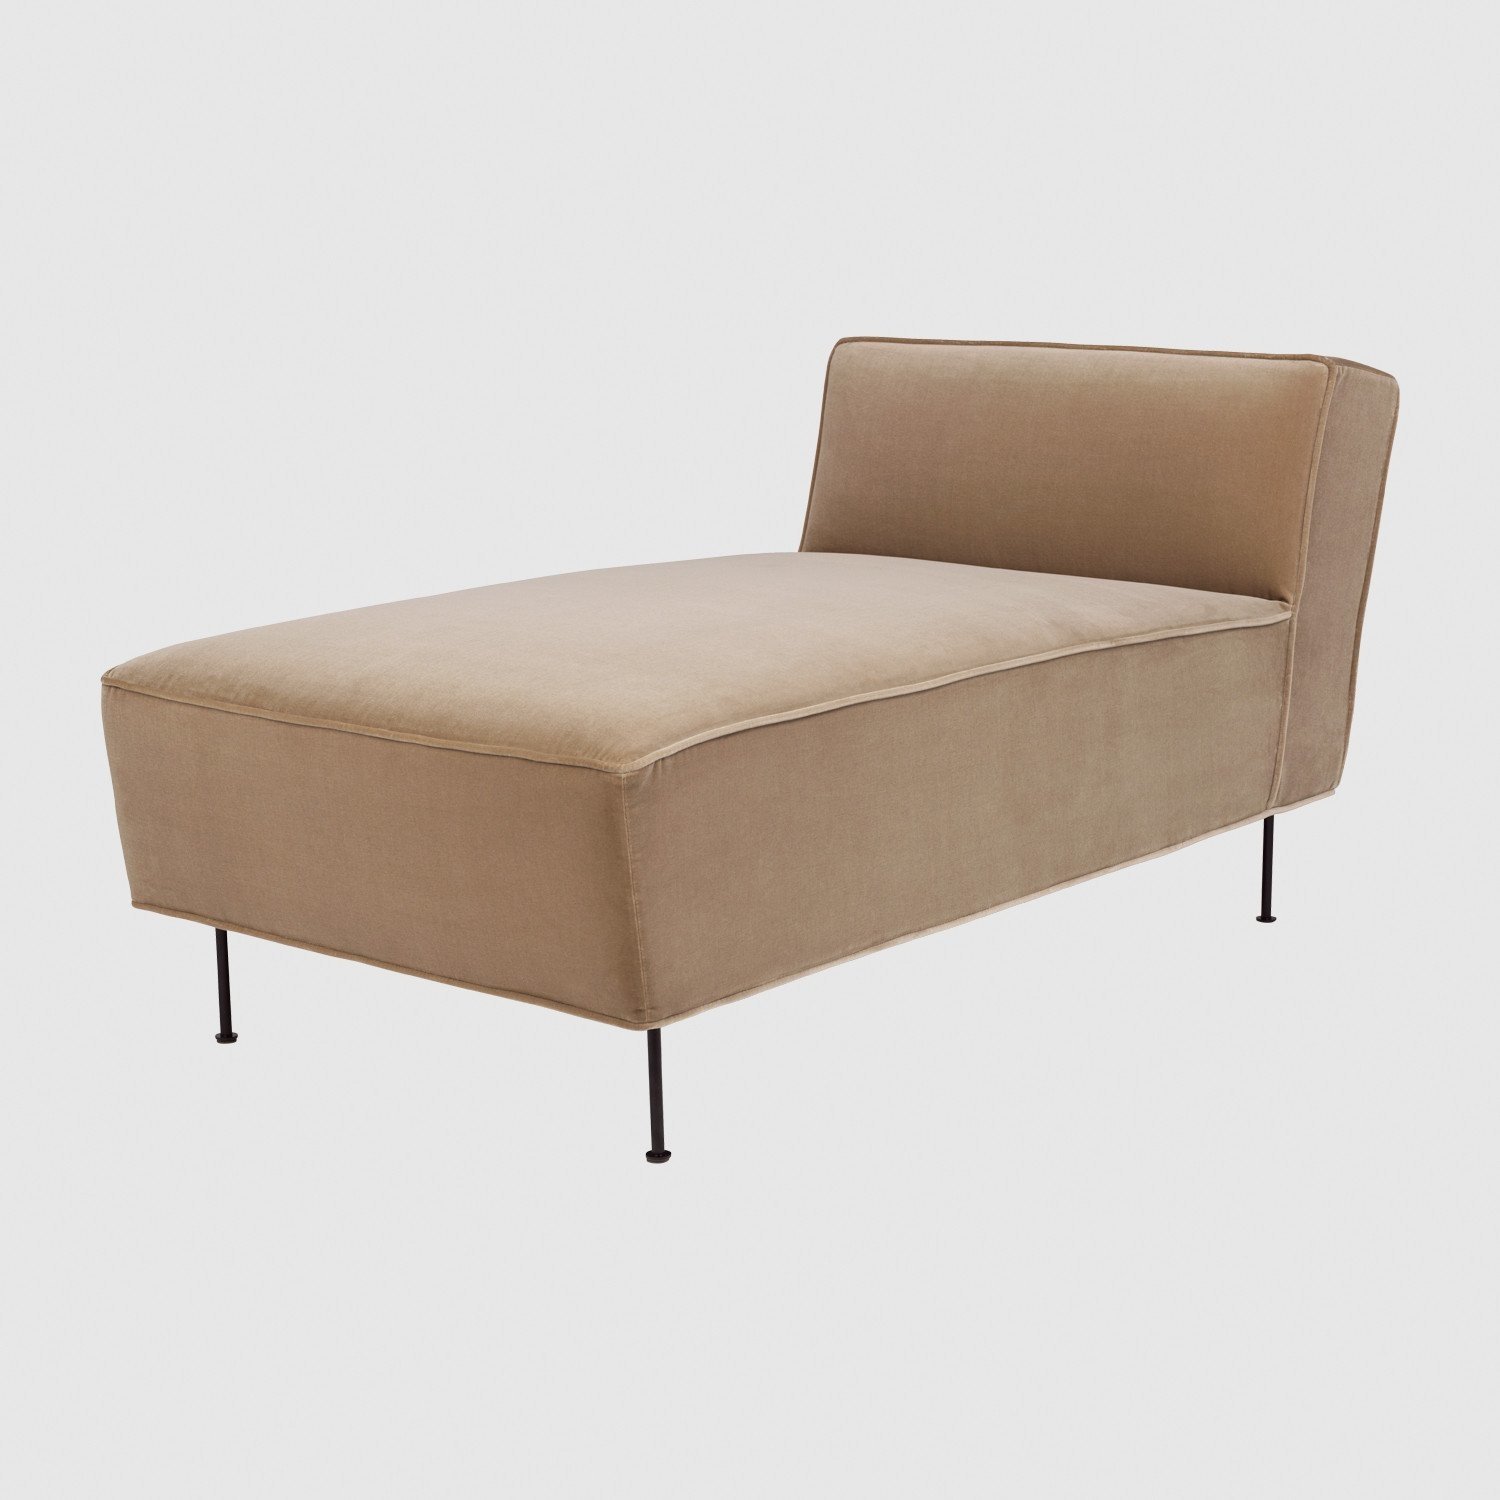 Getand noedels Pellen Modern Line Chaise Longue Sofa - Norden Living